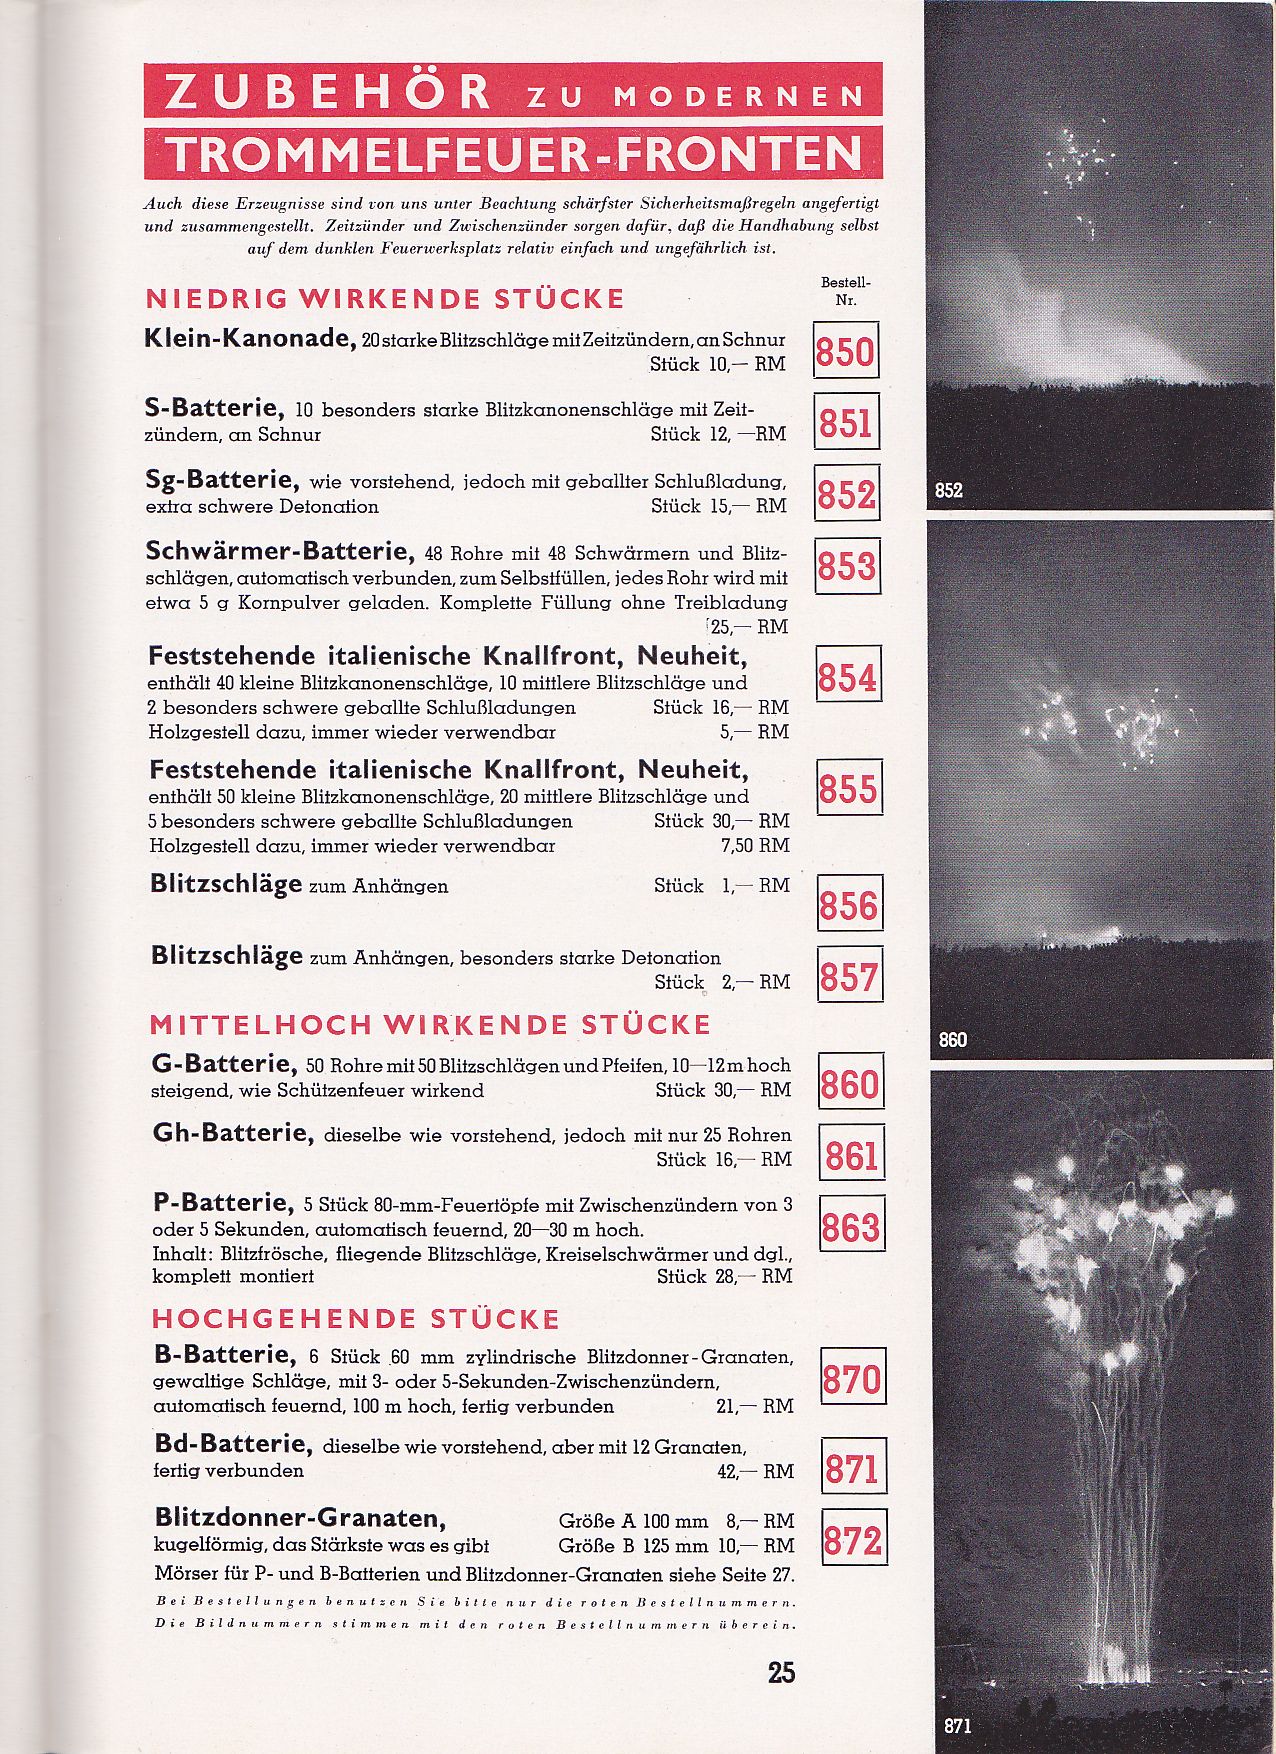 Pyortechnische Fabriken Katalog mit Eisfeld und Depyfag Ware von 1937.

(Danke an deecorpyro für die Bereitstellung)